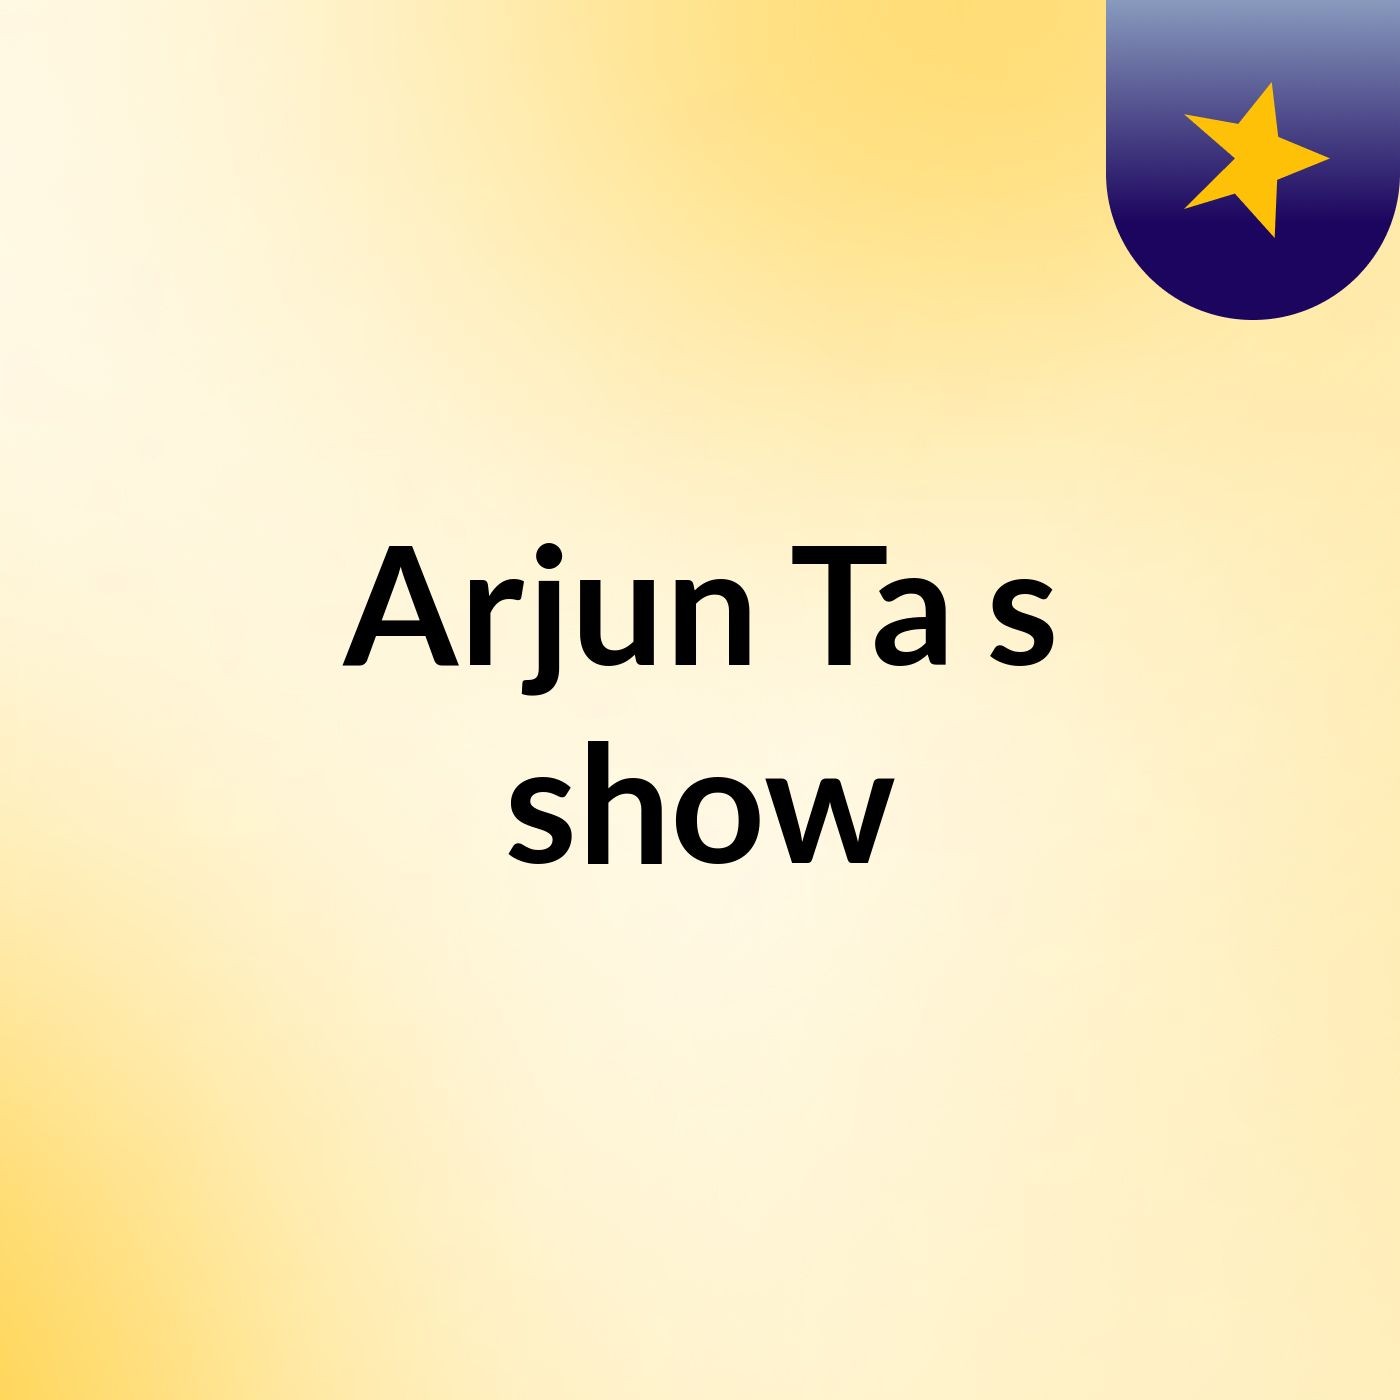 Arjun Ta's show